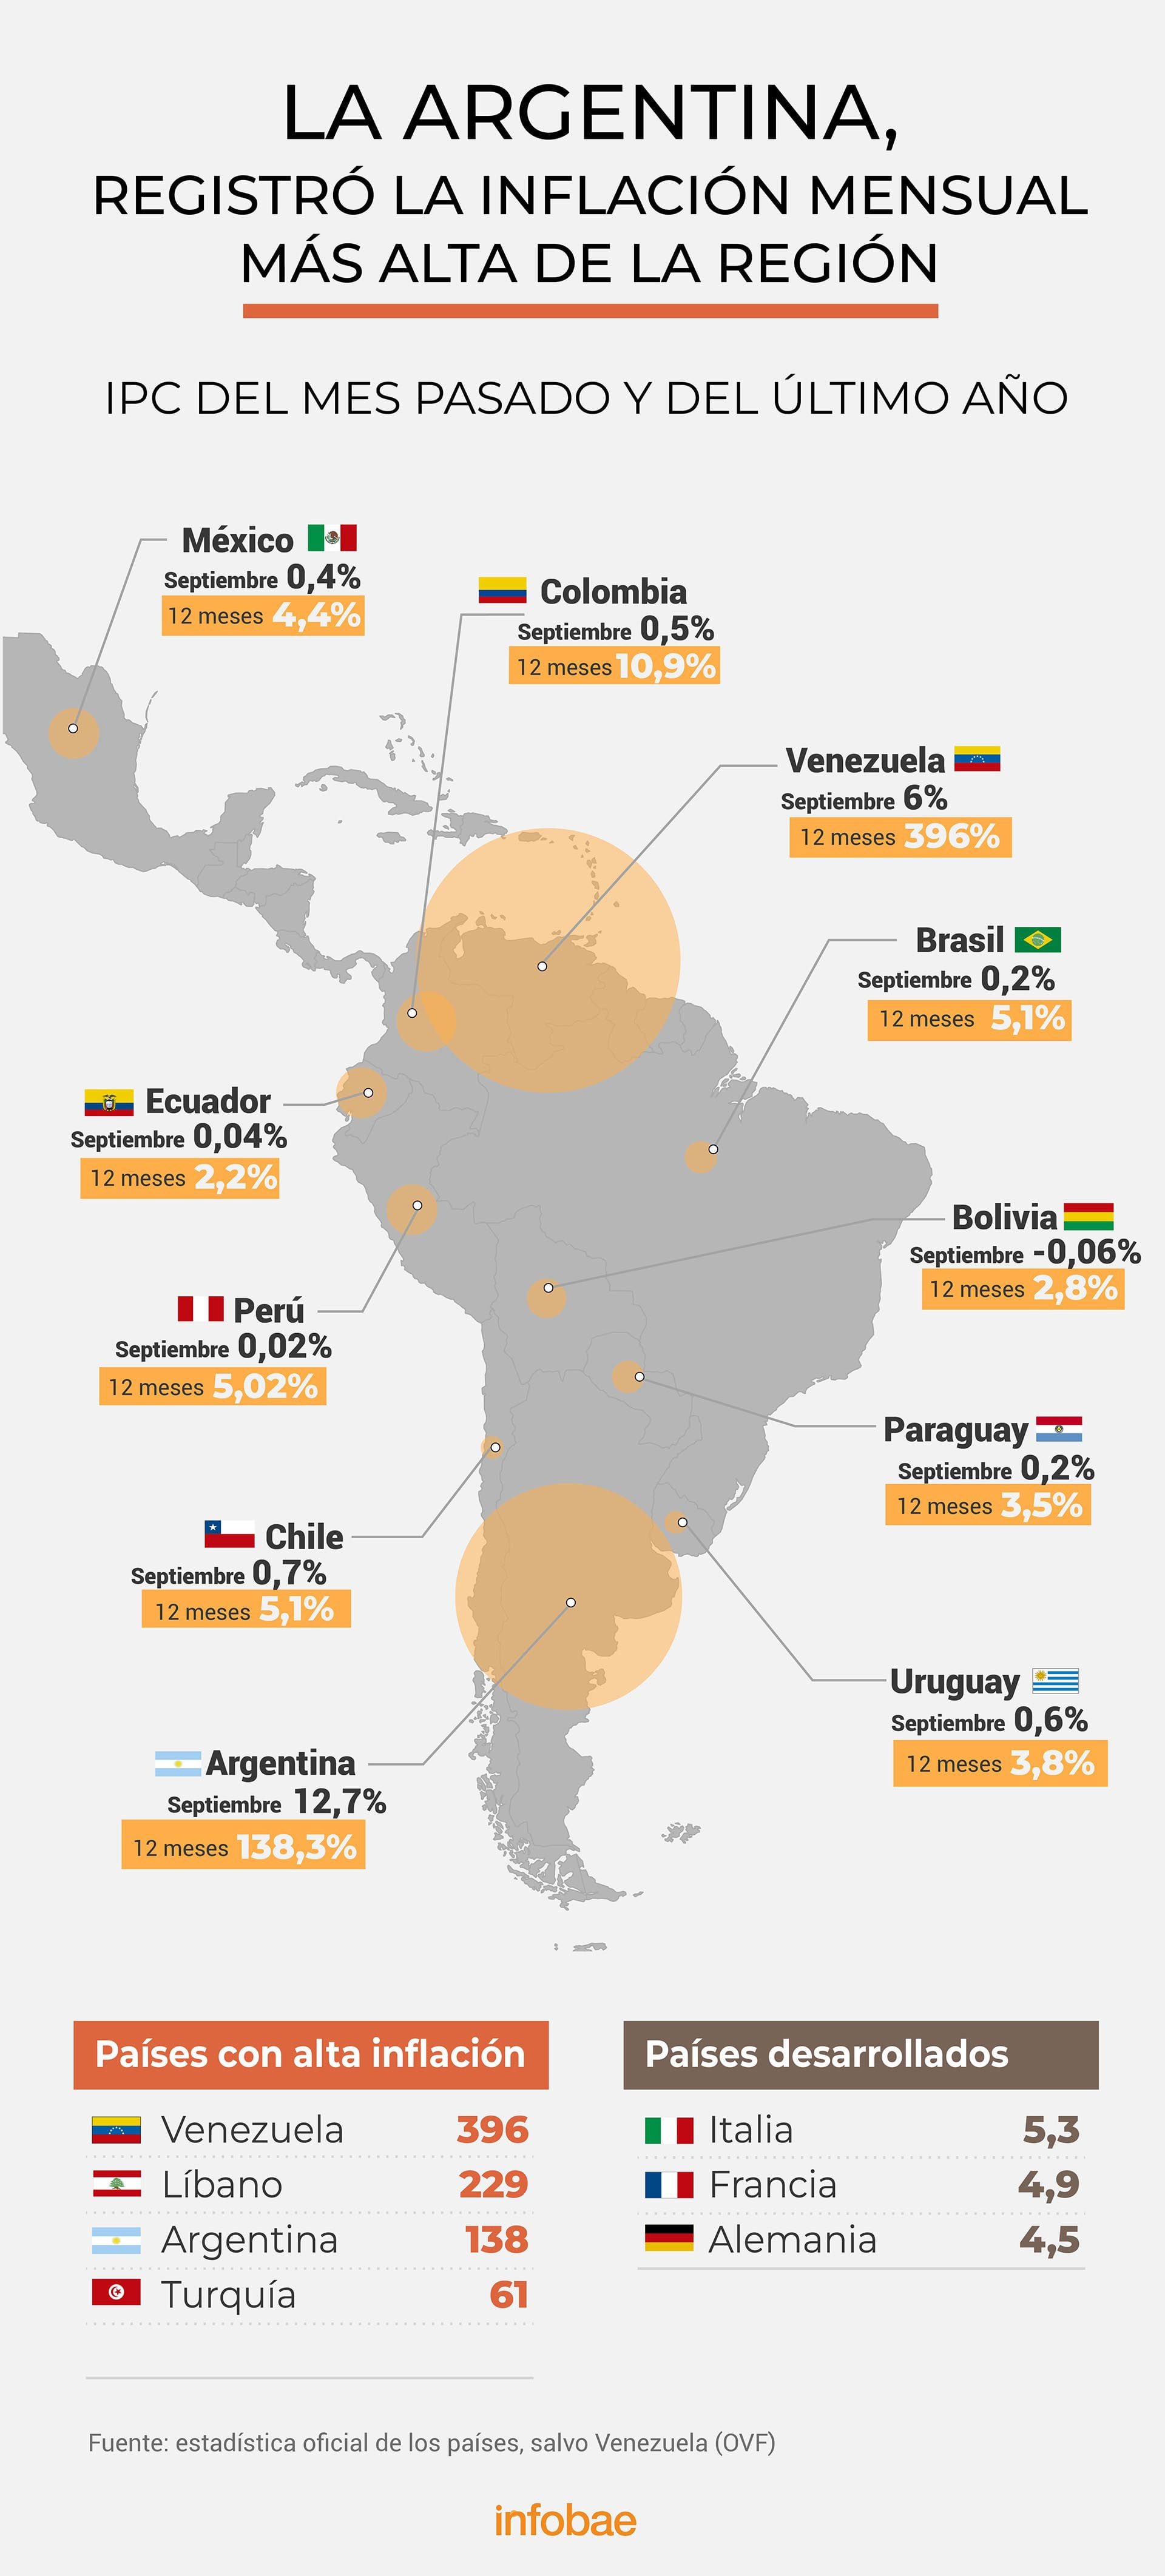 La Argentina registró la inflación más alta de la Región IPC septiembre